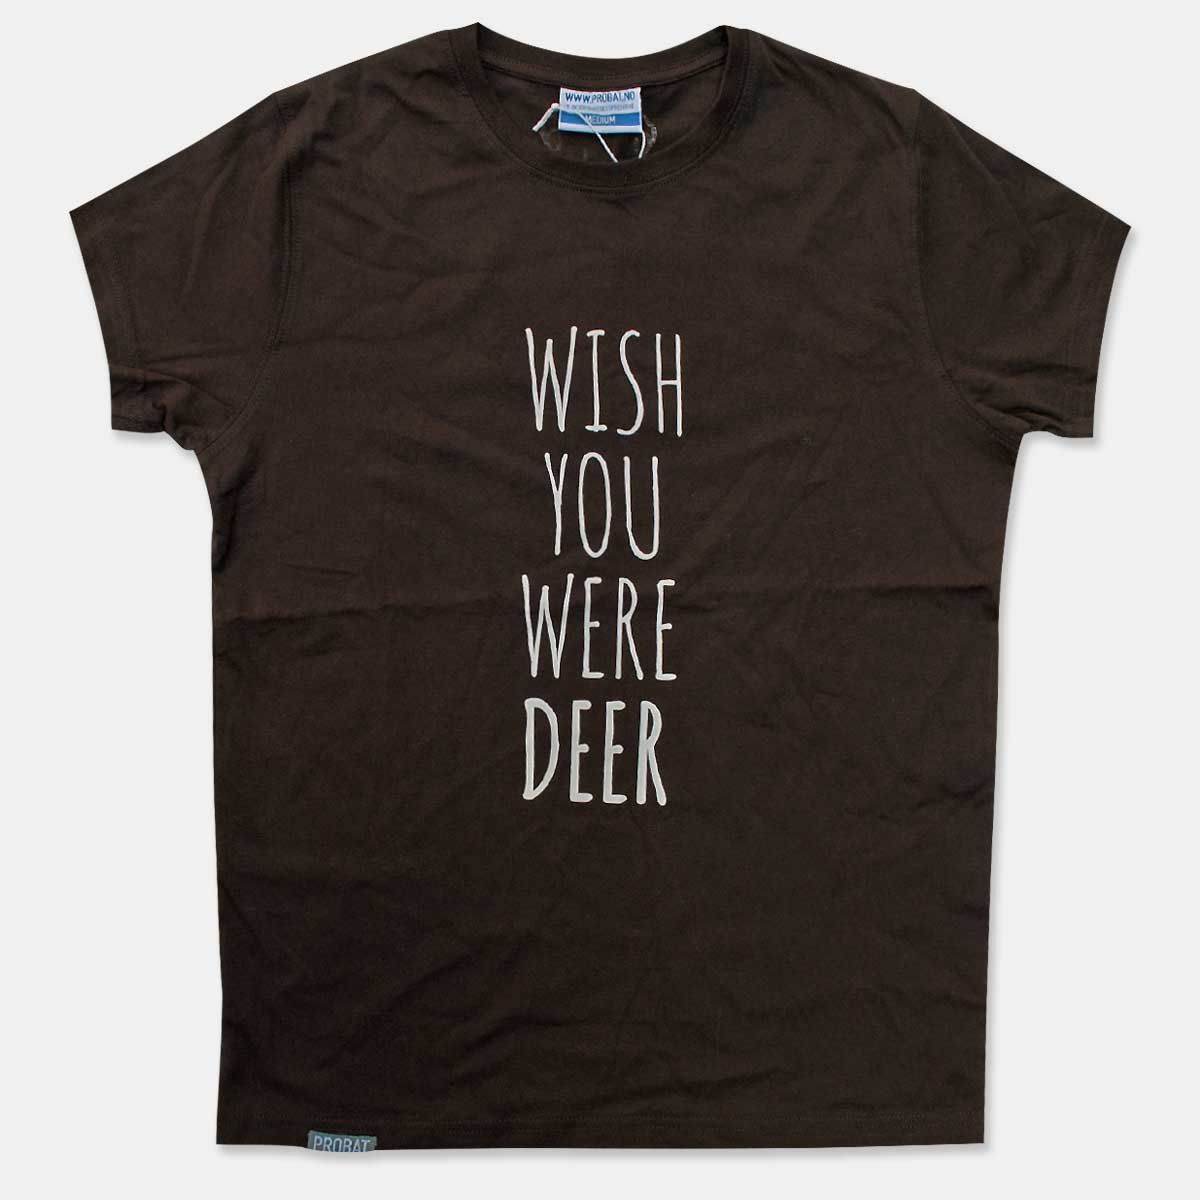 Probat - Wish you were deer